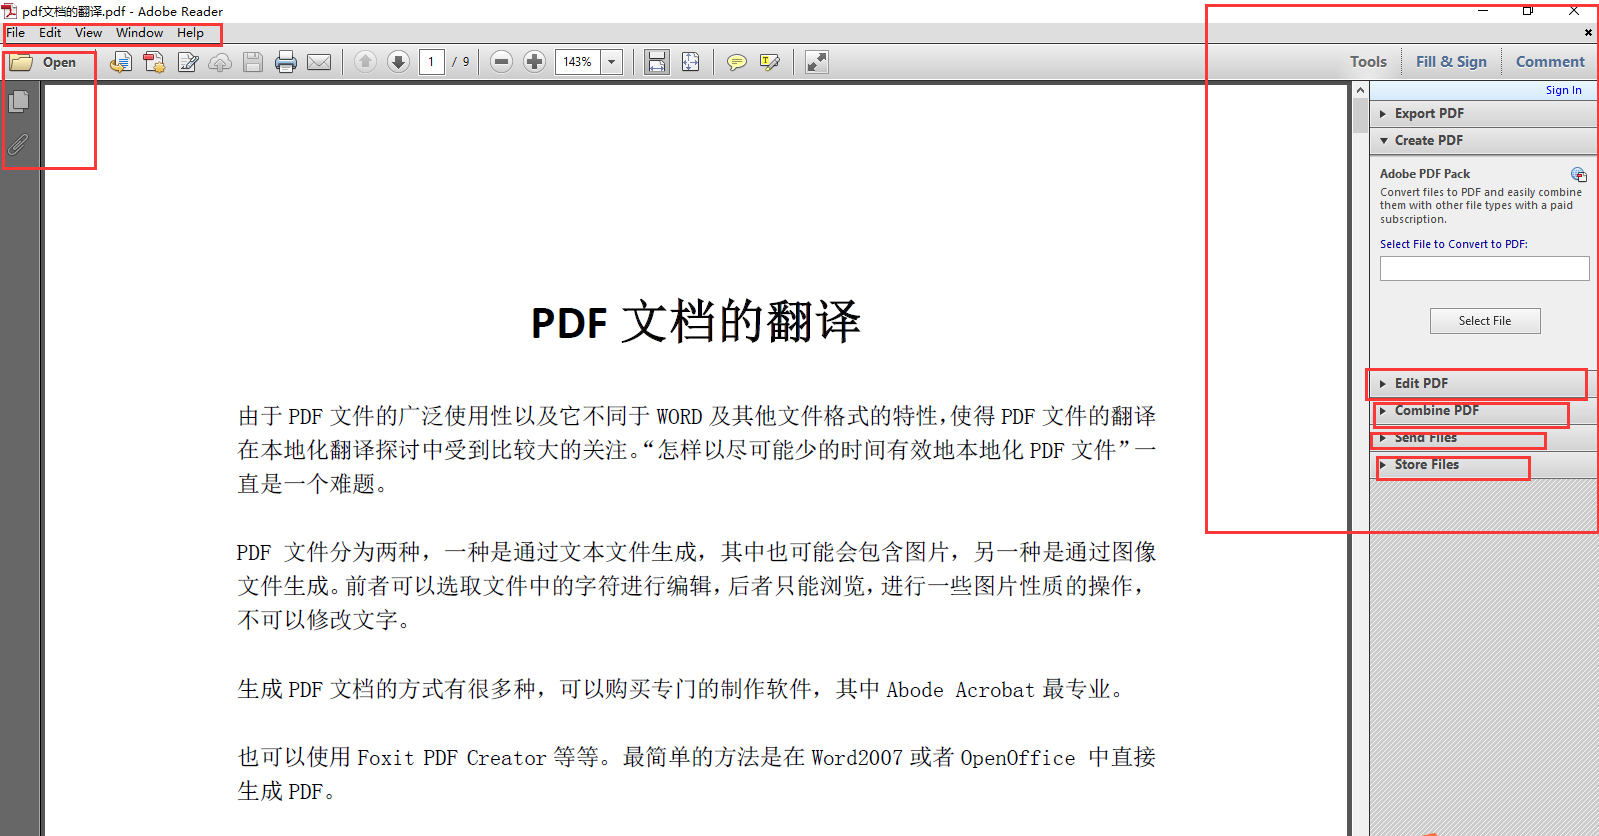 Adobe Reader 8.0.0 简体中文版